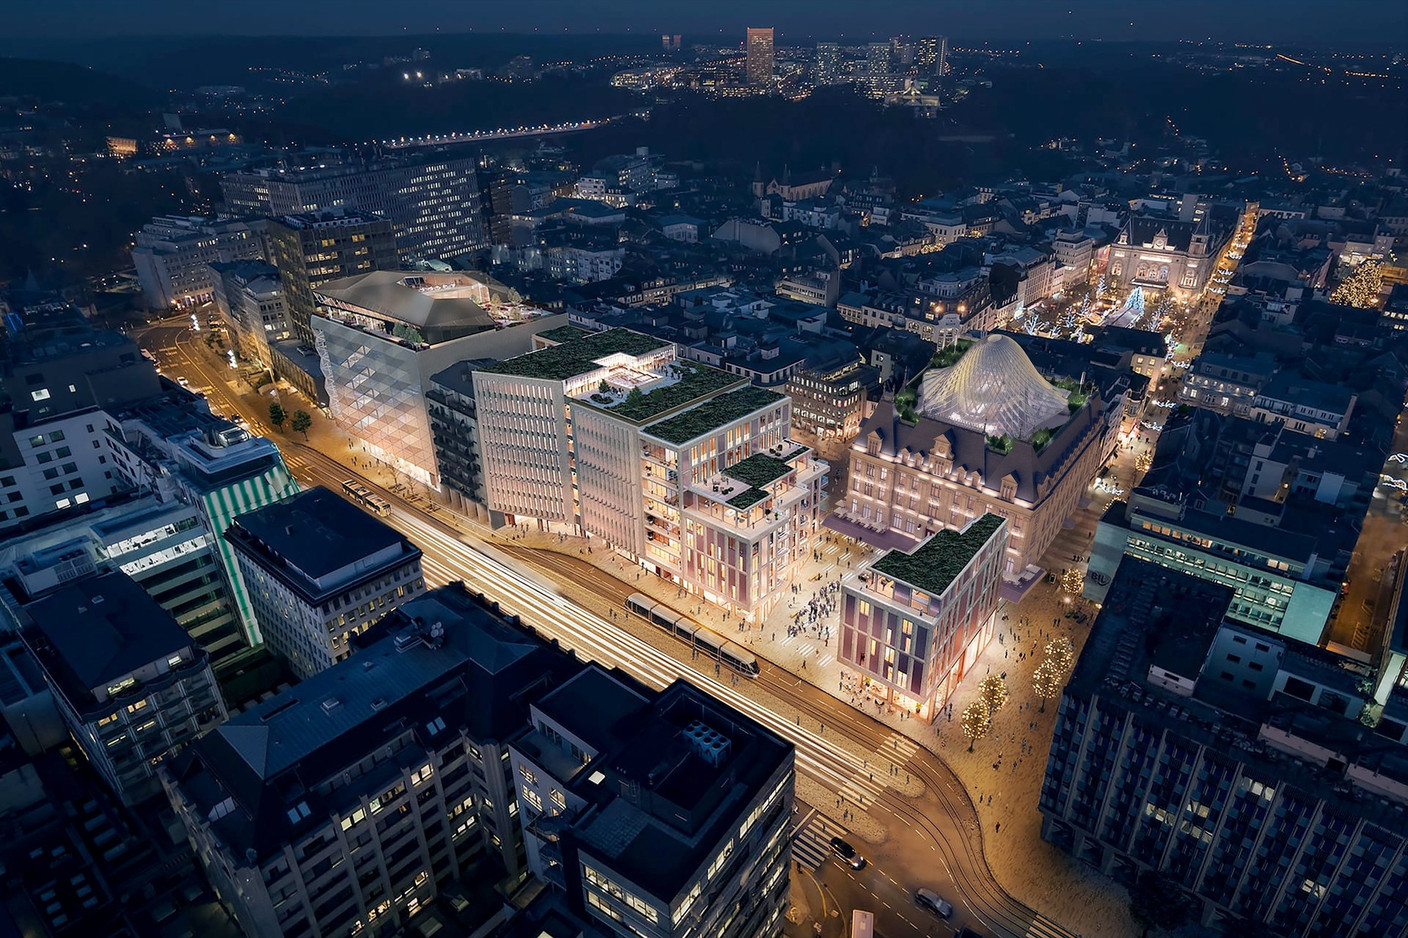 Proposition de Vincent Callebaut Architectures pour le réaménagement de l’Hôtel des Postes à Luxembourg. (Illustration: Vincent Callebaut Architectures)